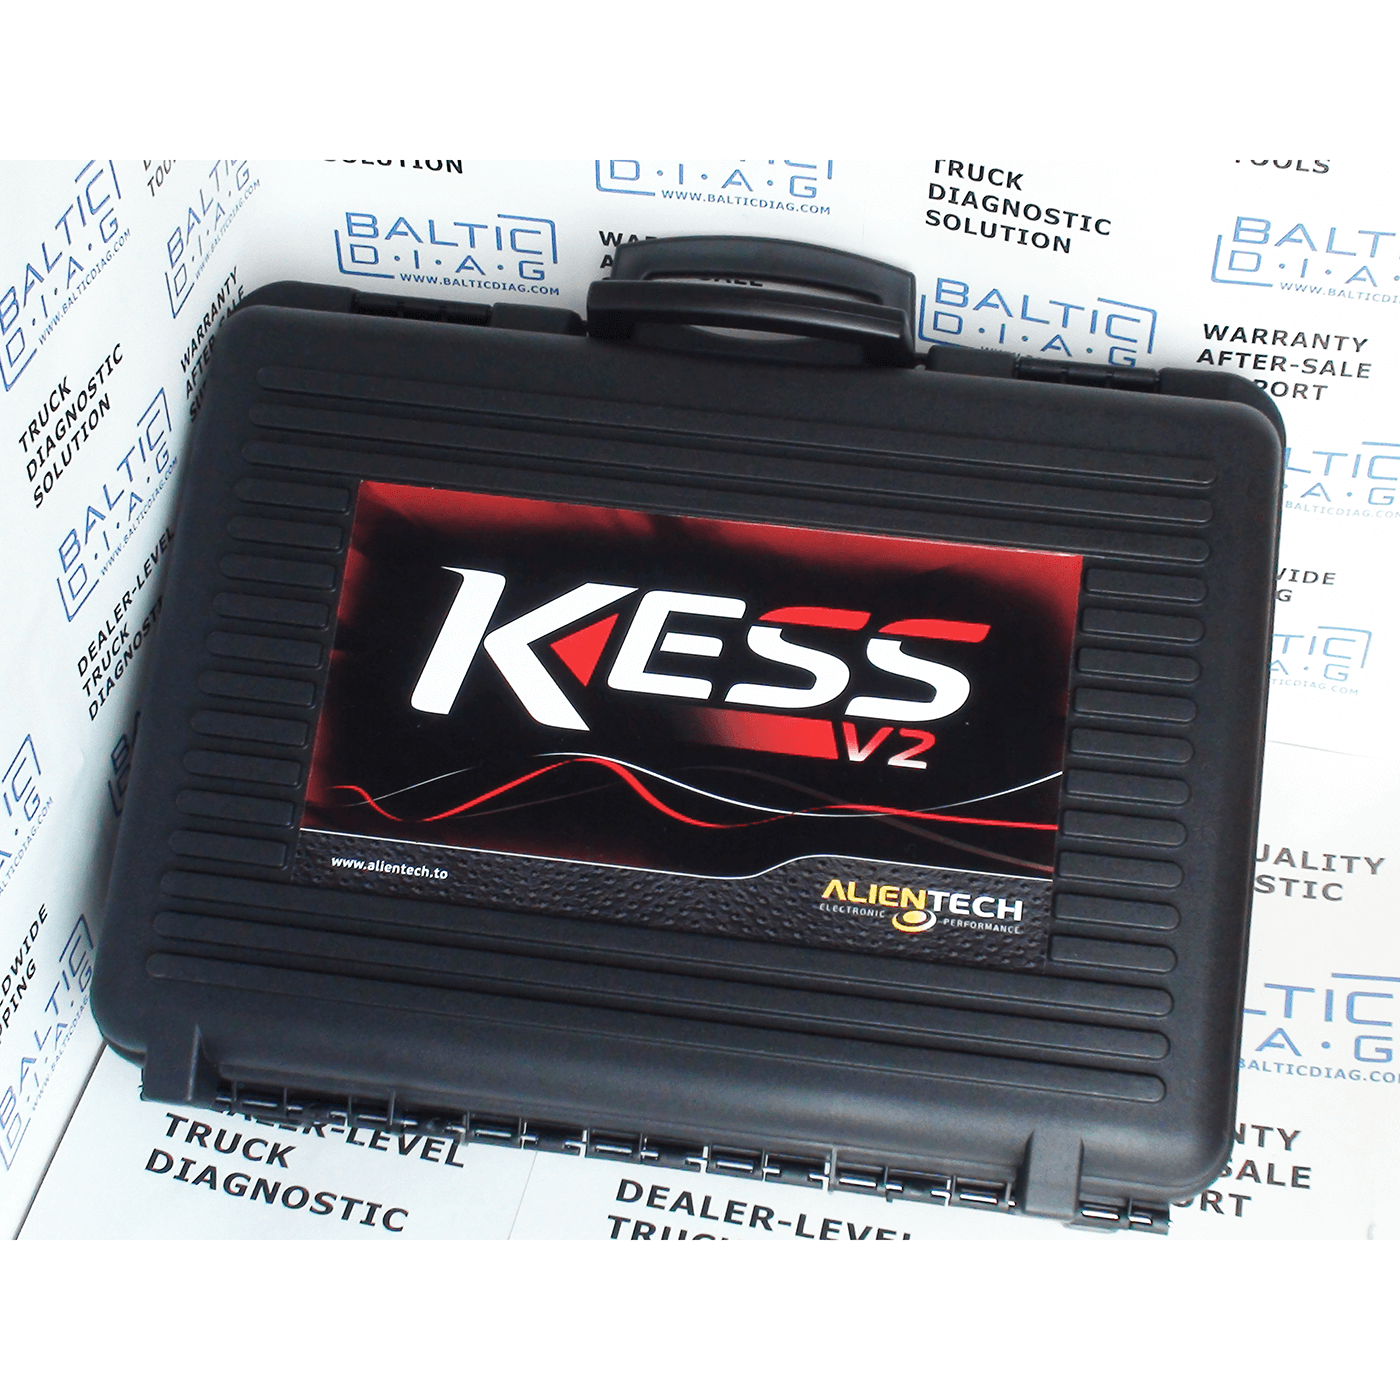 Full Set Online Master Kess V5.017 V2.53+KTAG 7.020 V2.70+LED BDM